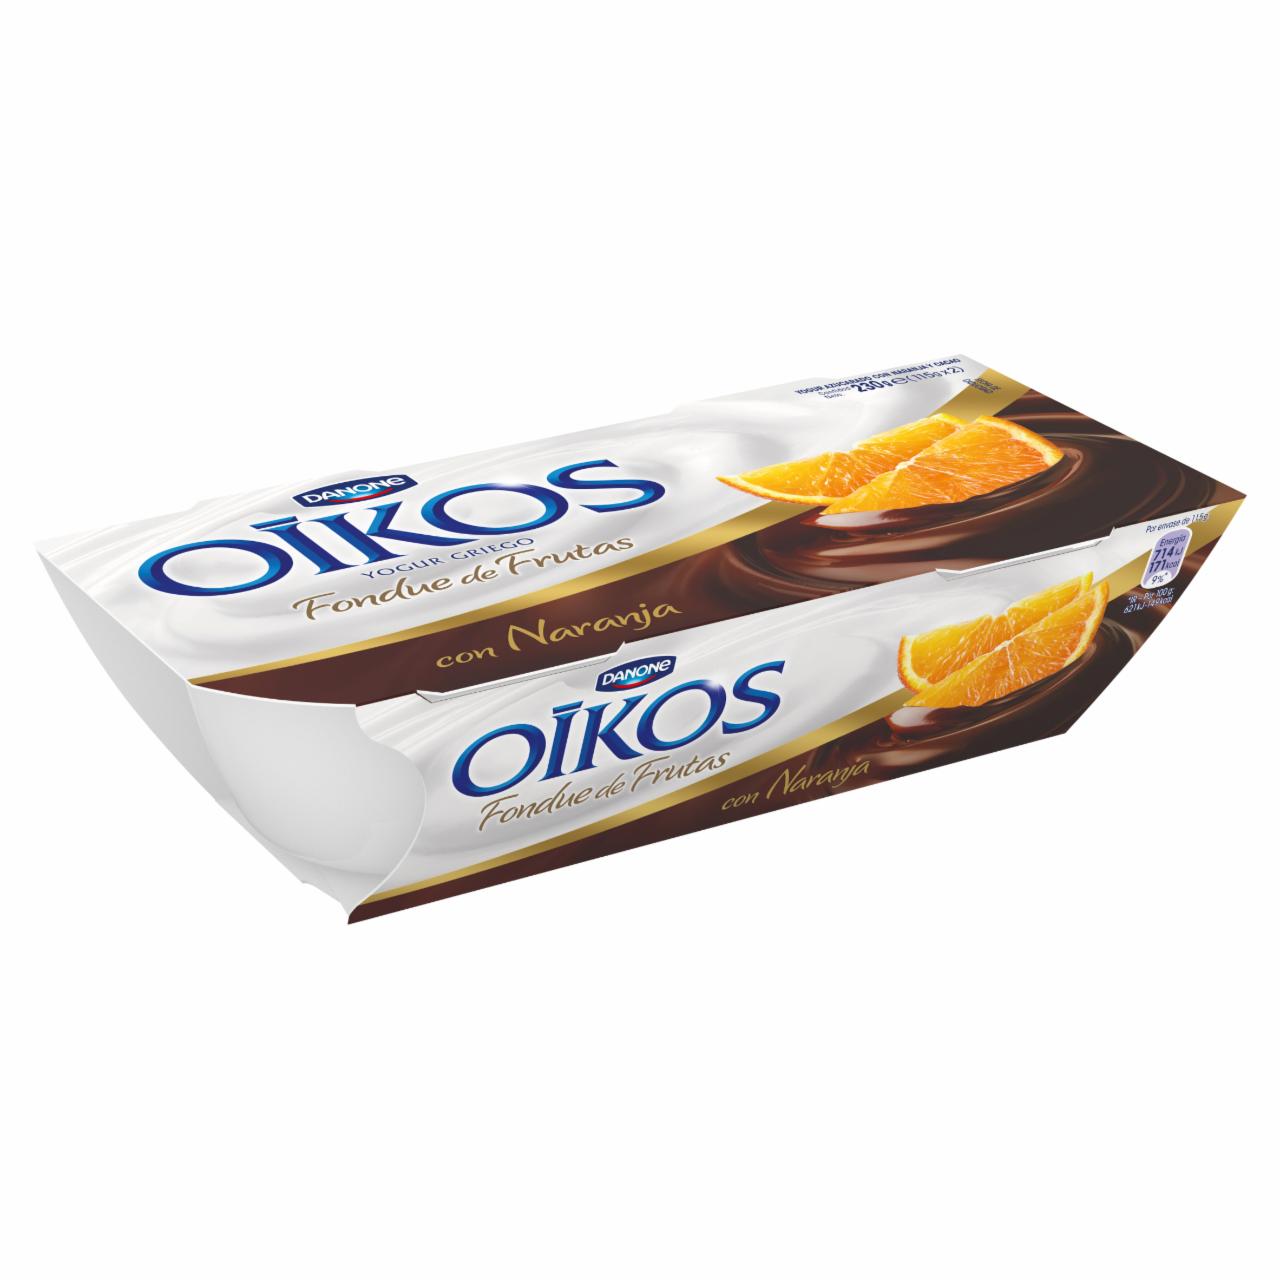 Képek - Danone Oikos Extreme élőflórás görög krémjoghurt kakaó-narancs öntettel 2 x 115 g